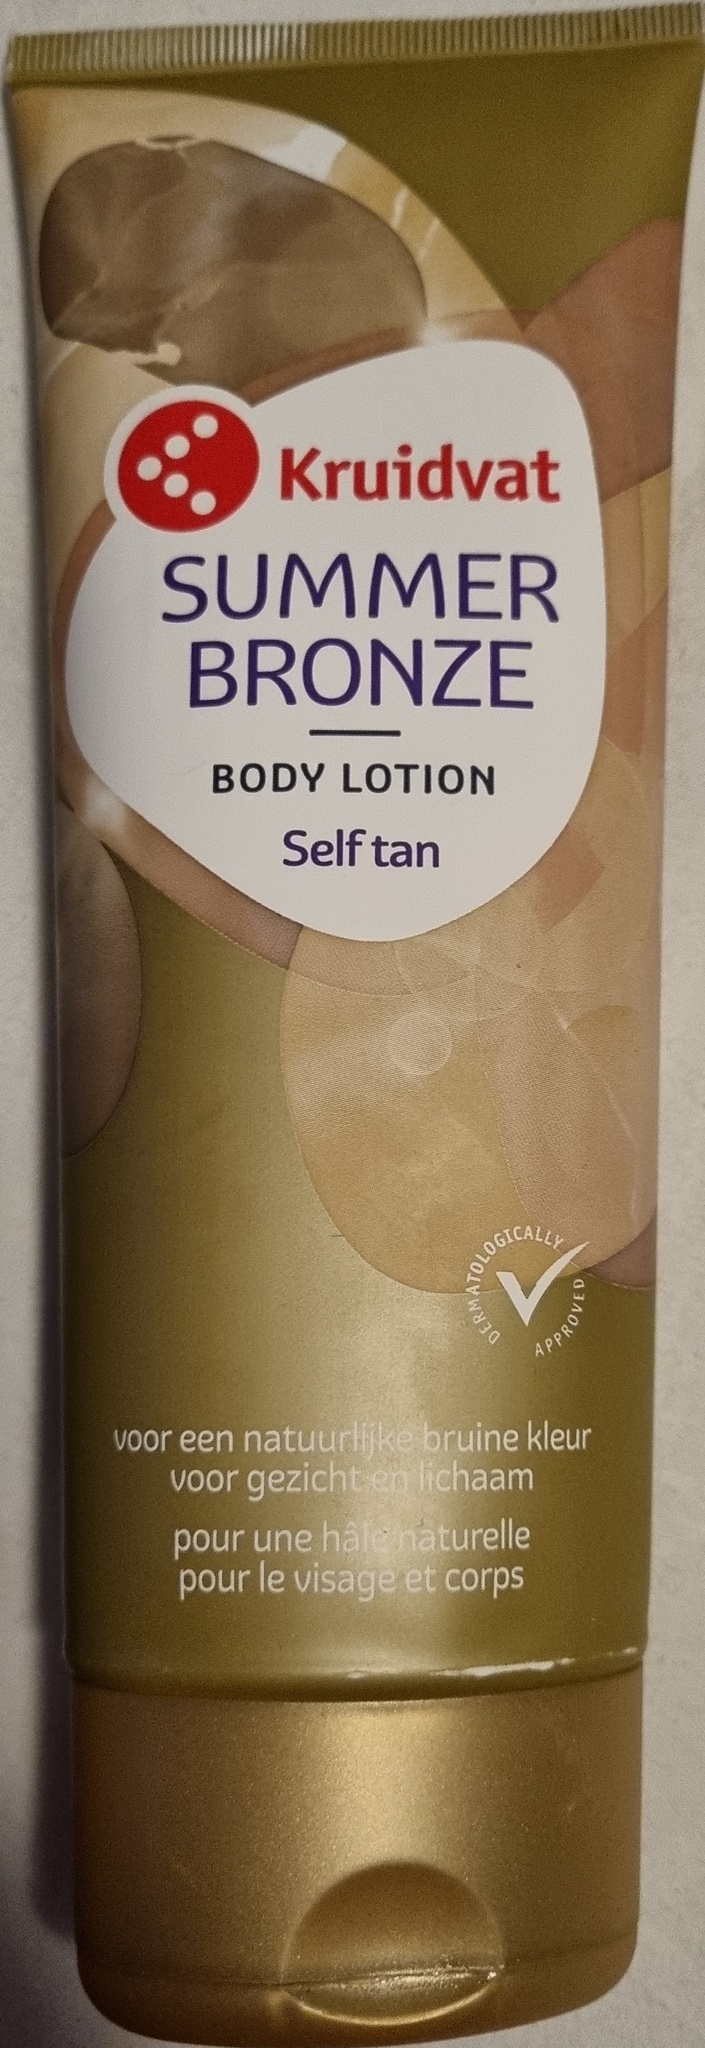 Kruidvat Summer Bronze Body Lotion